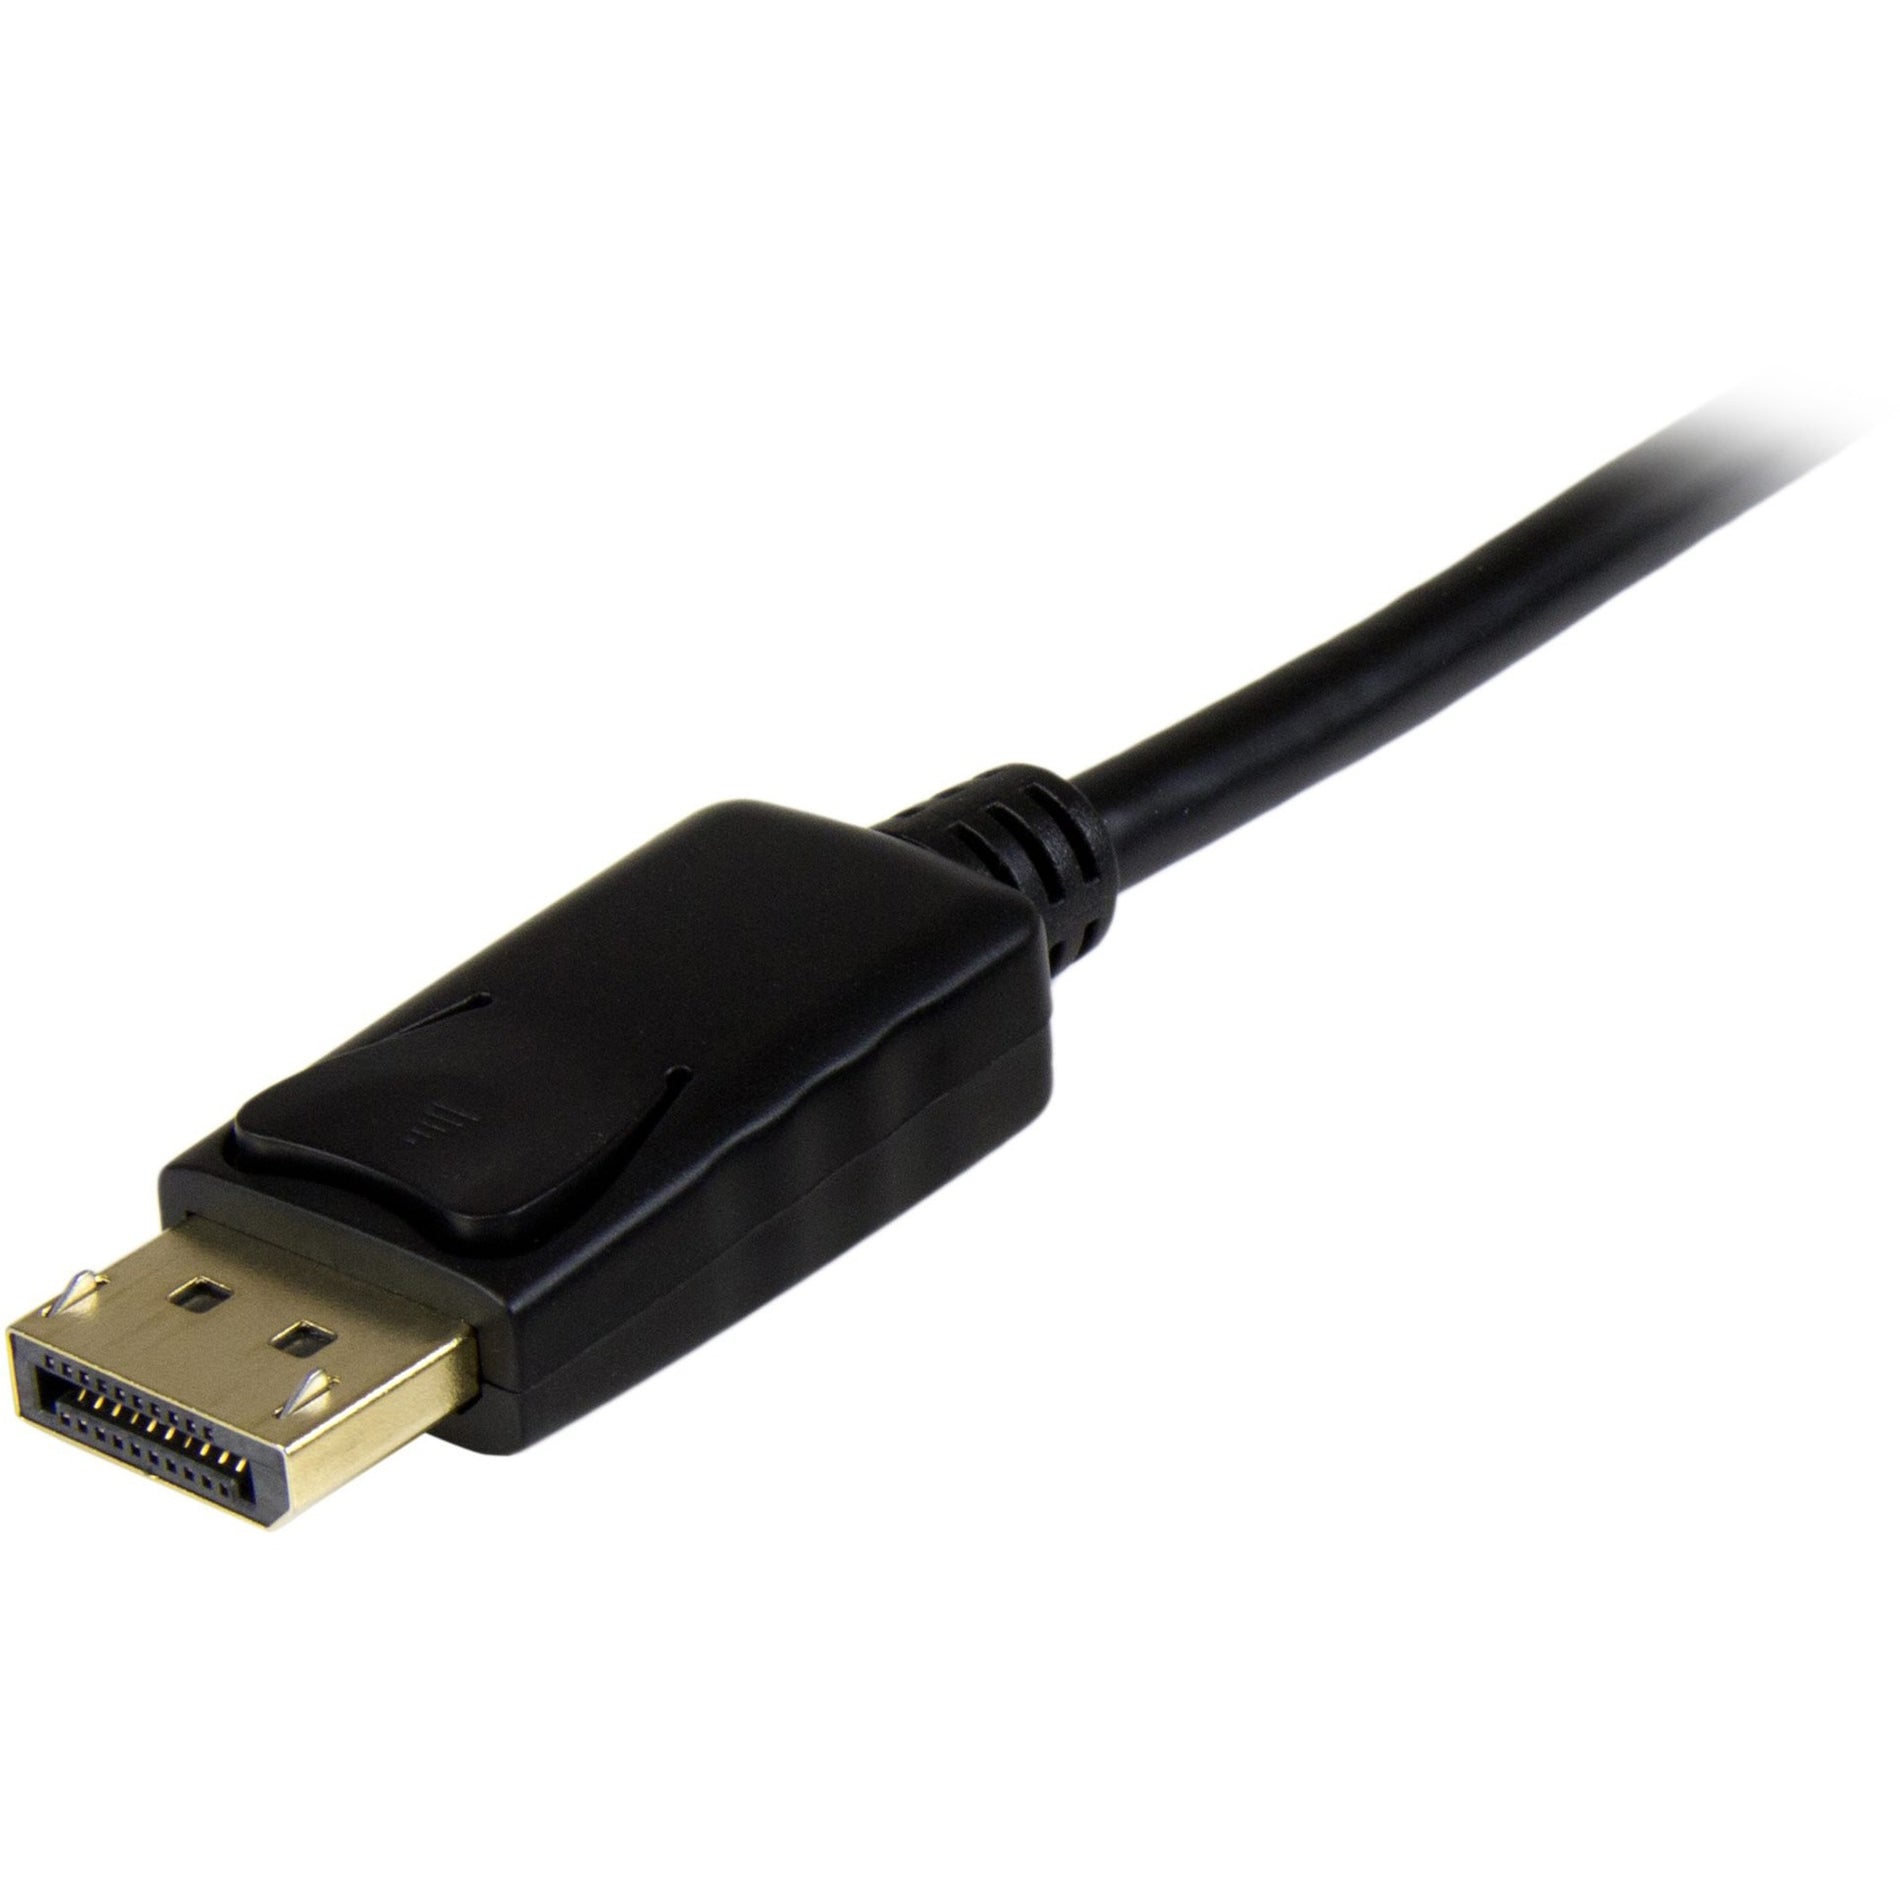 StarTech.com كابل تحويل DisplayPort إلى HDMI - 6 أقدام (2 م) - 4K ، القضاء على الفوضى من خلال توصيل جهاز الكمبيوتر مباشرة بشاشة HDMI